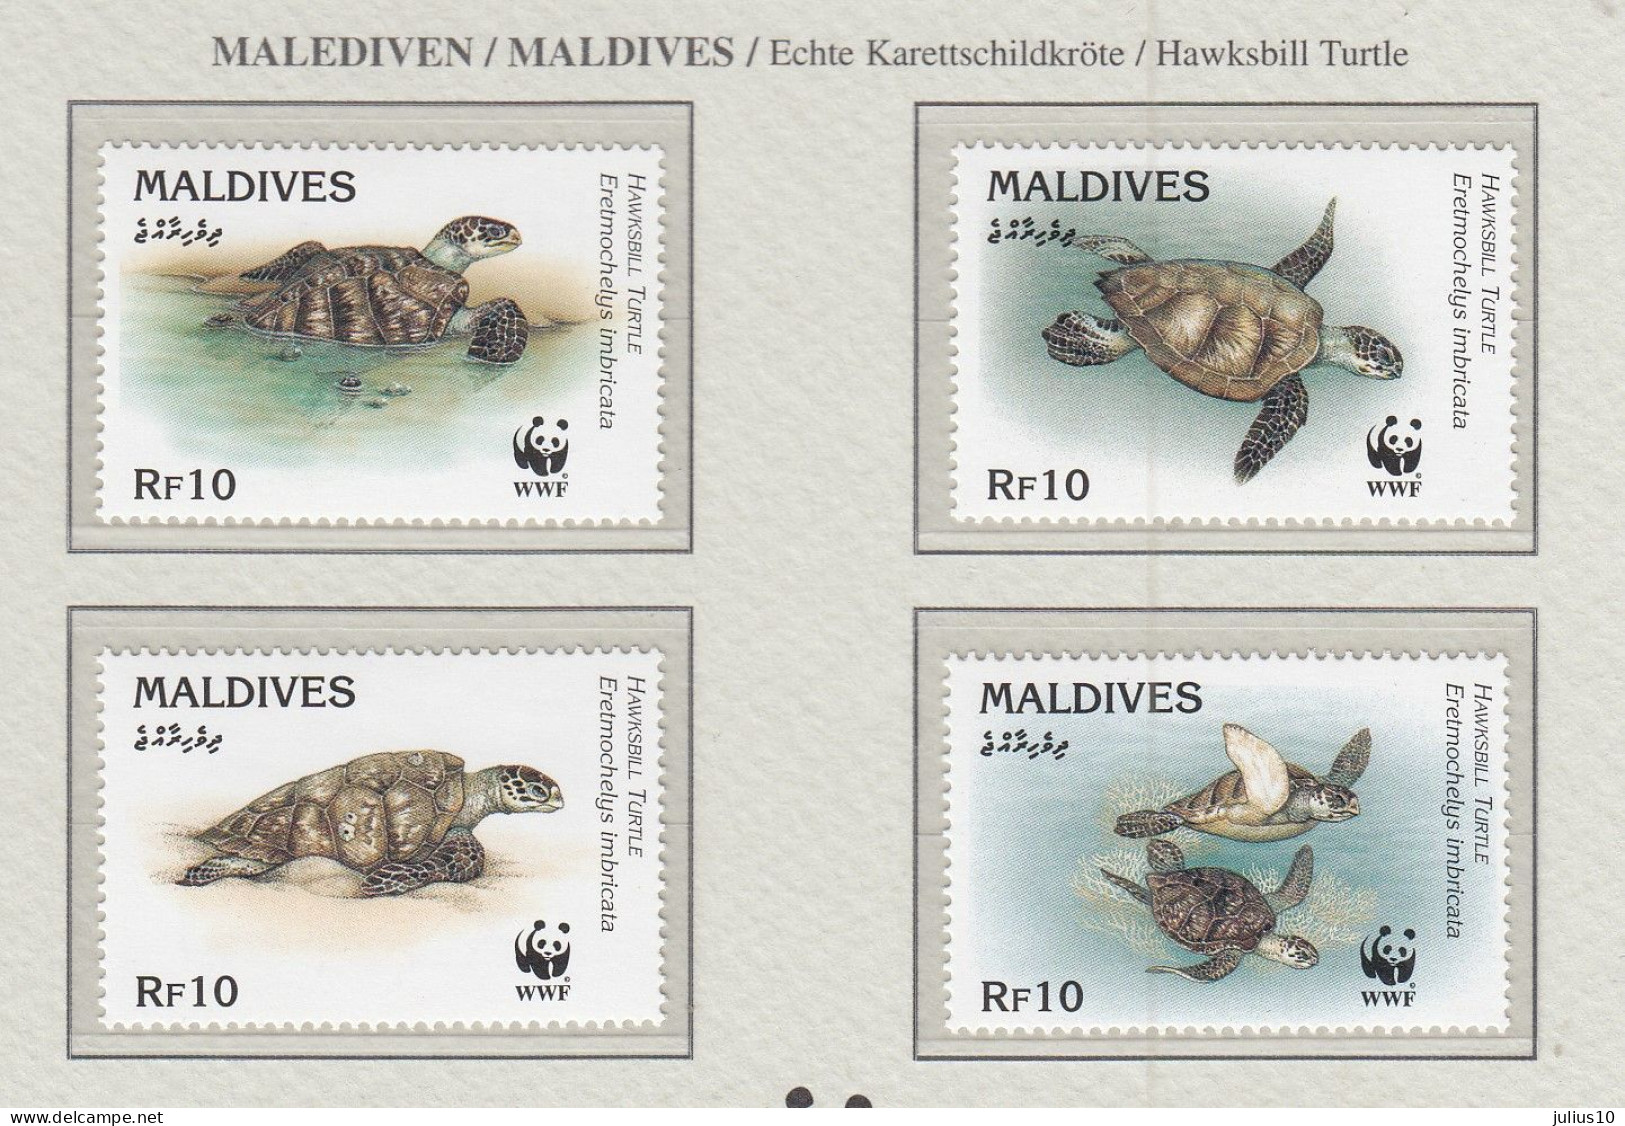 MALDIVES 1995 WWF Turtles Mi 2420-23 MNH(**) Fauna 529 - Tortugas